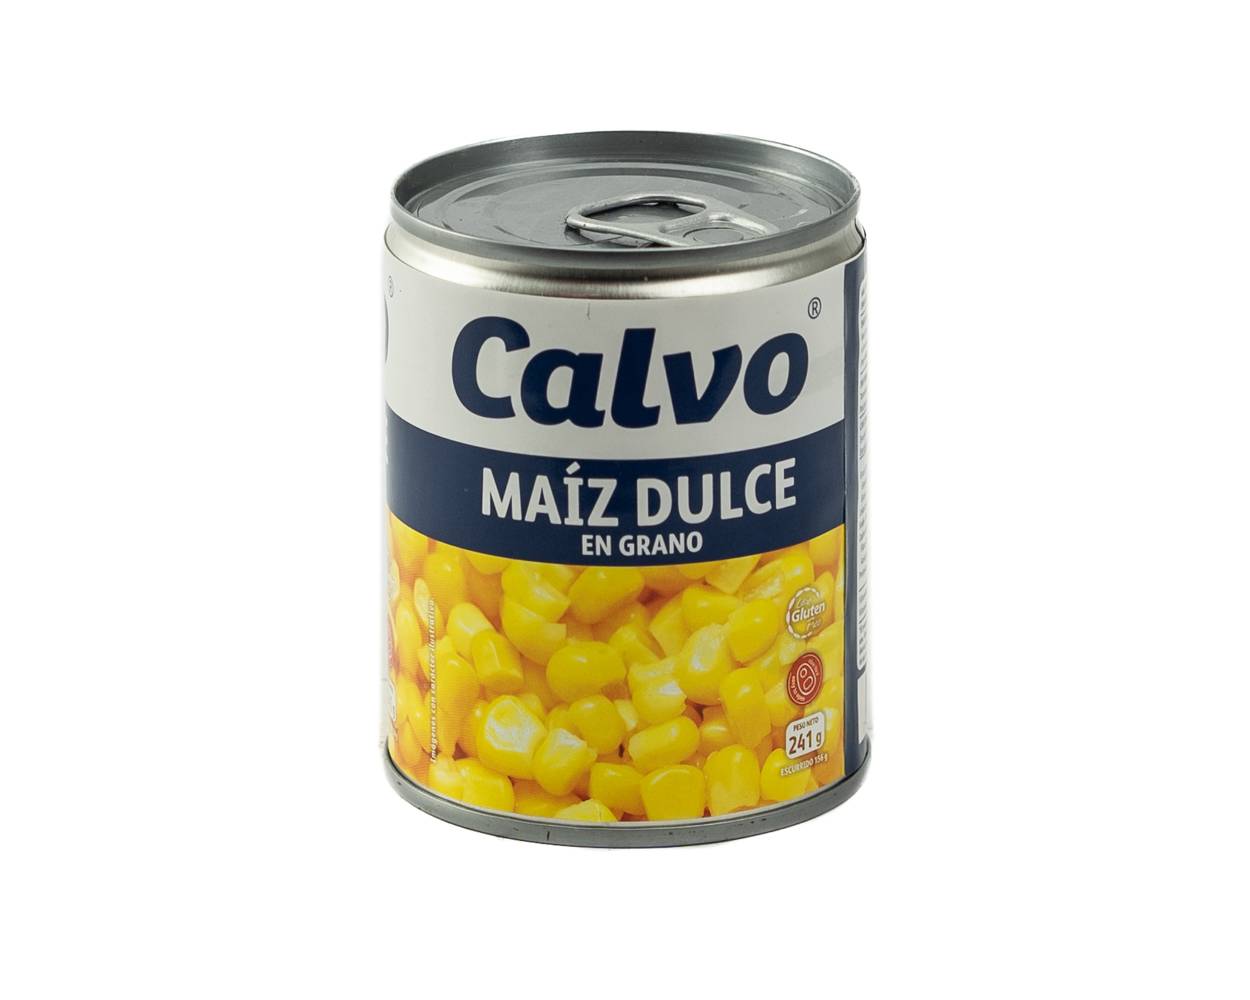 Calvo maíz dulce en grano (lata 241 g)